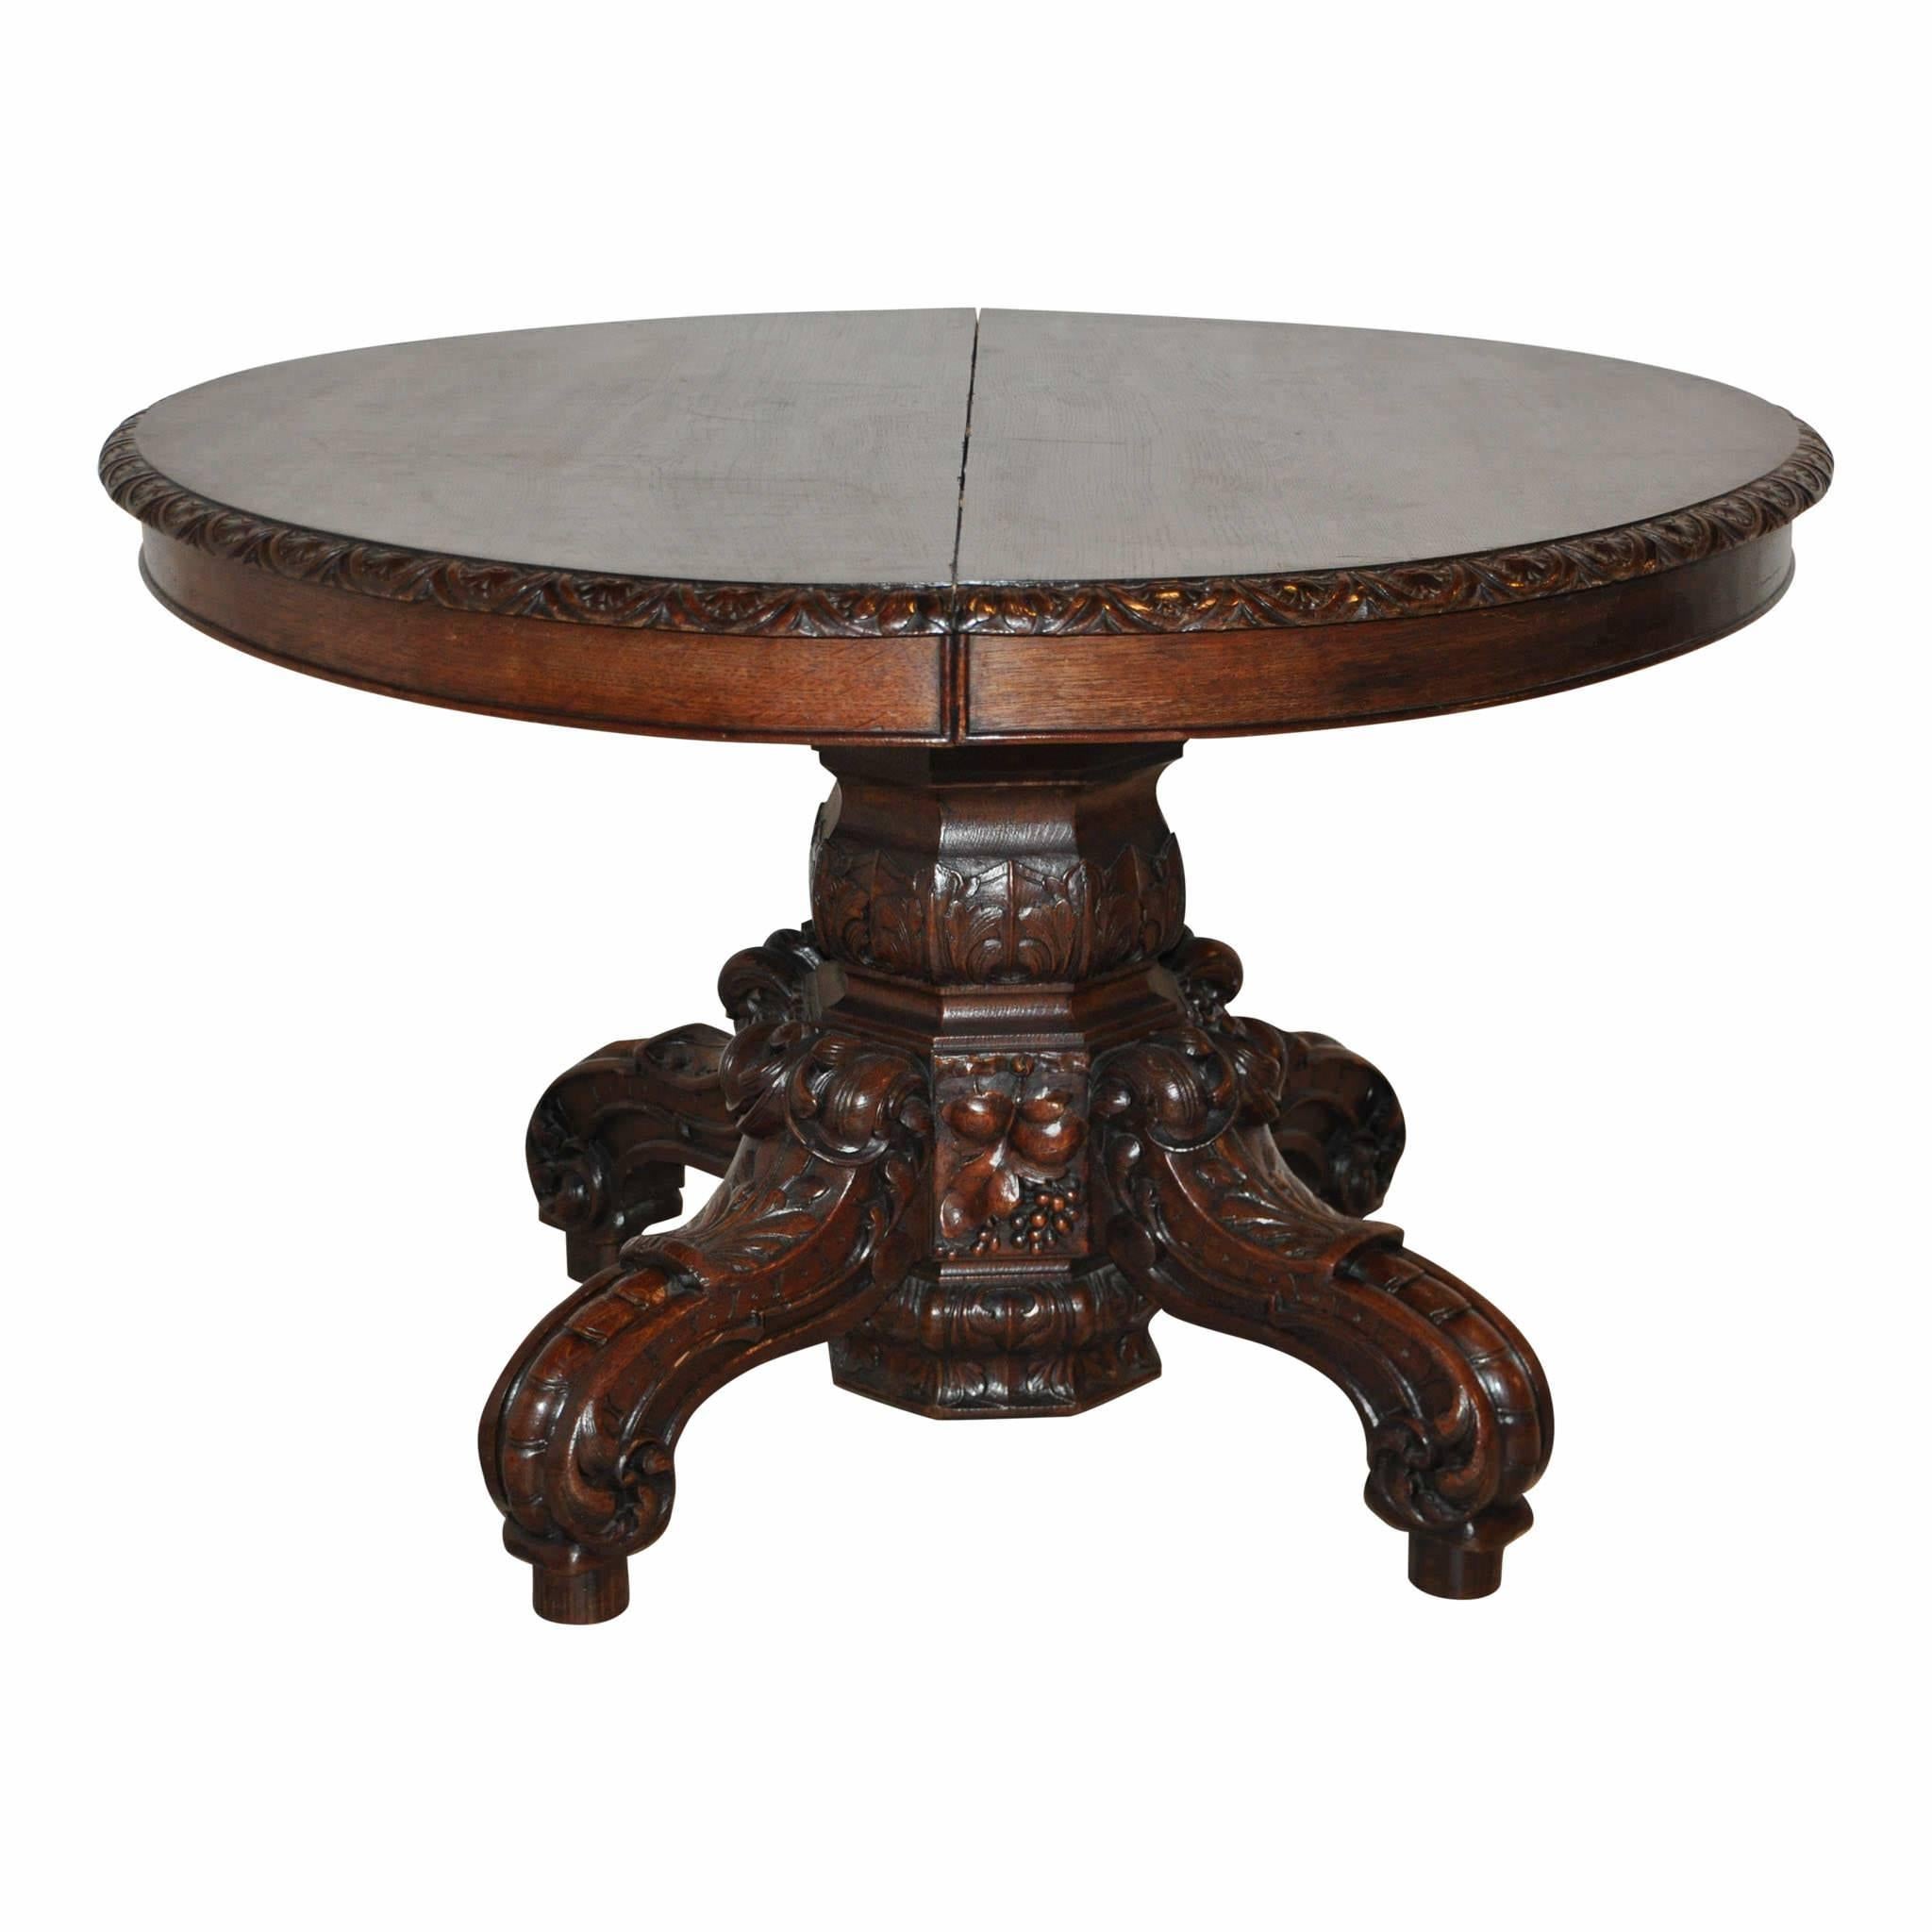 Dieser Tisch ist ein seltener Fund! Es ist ungewöhnlich, einen Jagdtisch mit einer fertigen, passenden Platte wie dieser zu erwerben. Die meisten Jagdtische können zwar erweitert werden, aber es fehlen die Blätter oder sie sind aus unbearbeiteten